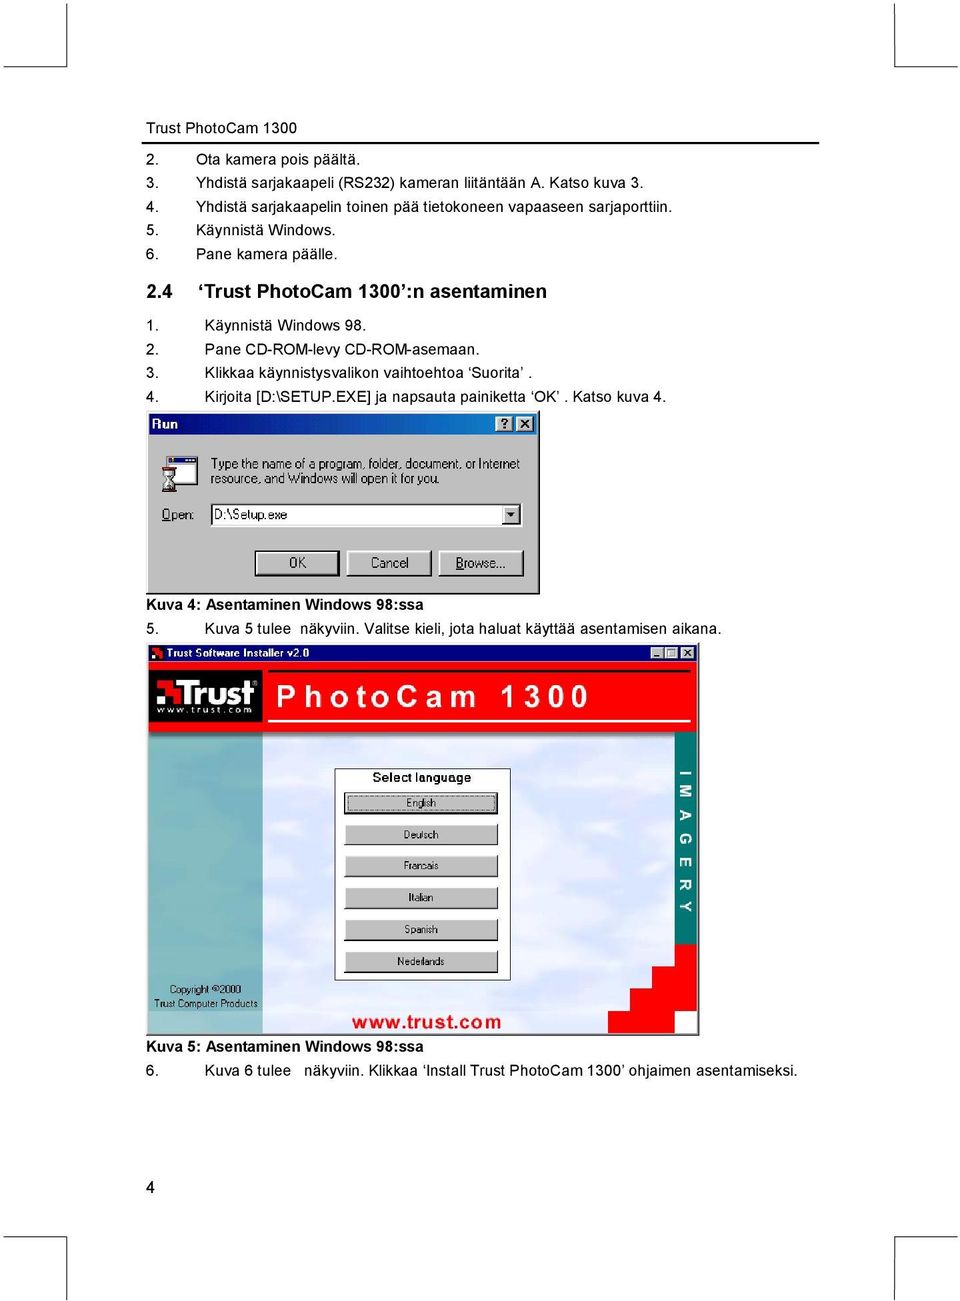 Klikkaa käynnistysvalikon vaihtoehtoa Suorita. 4. Kirjoita [D:\SETUP.EXE] ja napsauta painiketta OK. Katso kuva 4. Kuva 4: Asentaminen Windows 98:ssa 5.